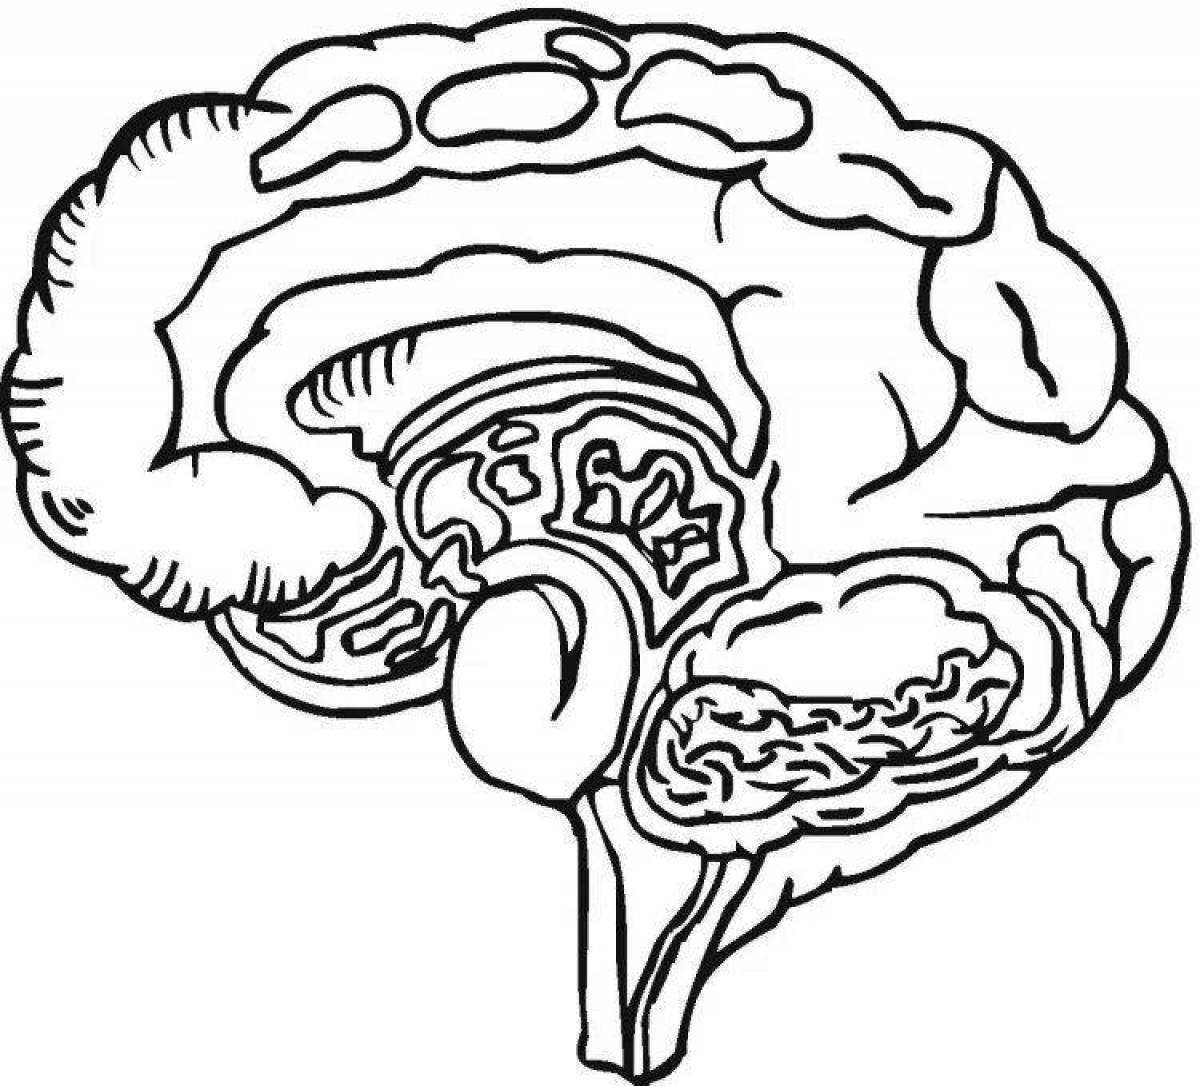 Color brain. Головной мозг человека для раскрашивания. Раскраска человеческий мозг. Головной мозг раскраска. Мозг человека для раскрашивания для детей.